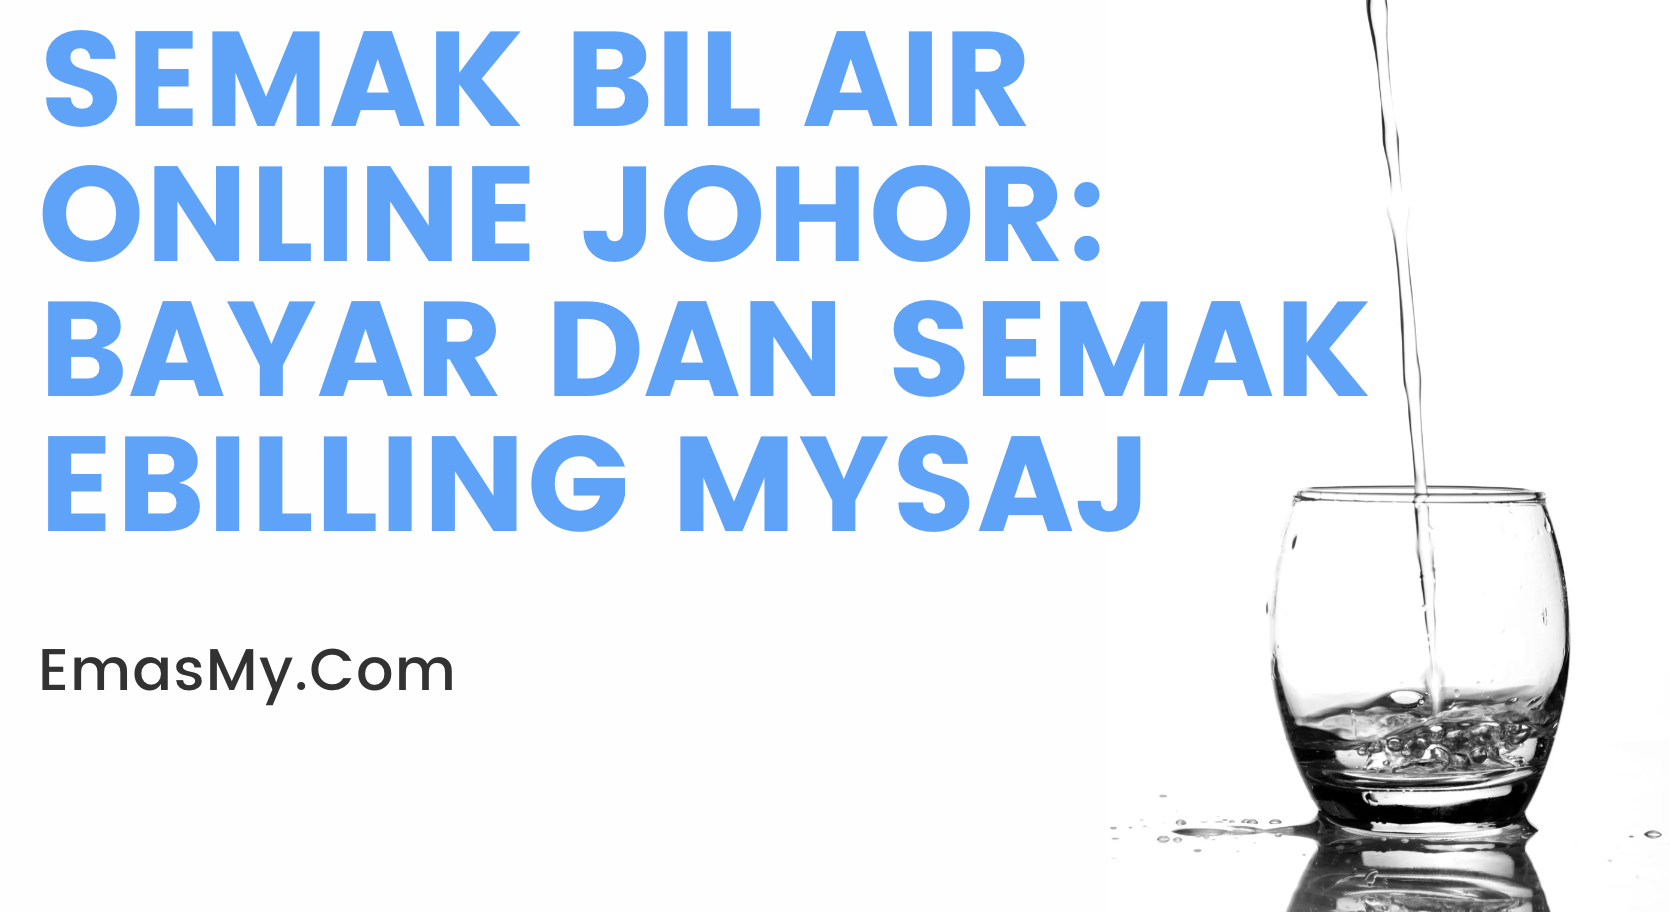 Semak Bil Air Online Johor: Bayar dan Semak eBilling mySAJ